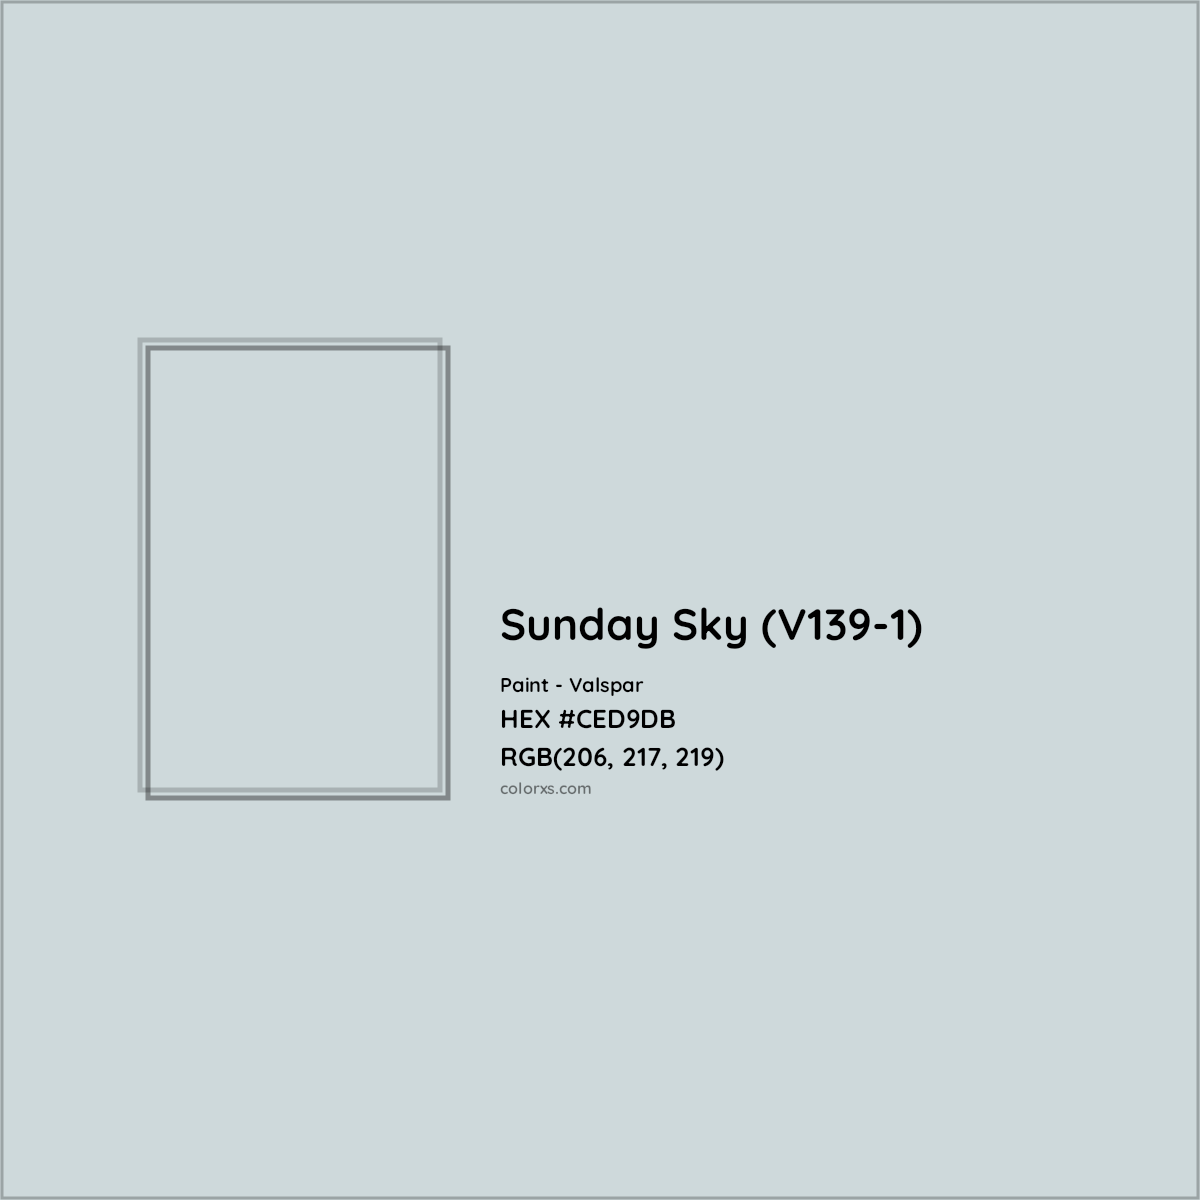 HEX #CED9DB Sunday Sky (V139-1) Paint Valspar - Color Code